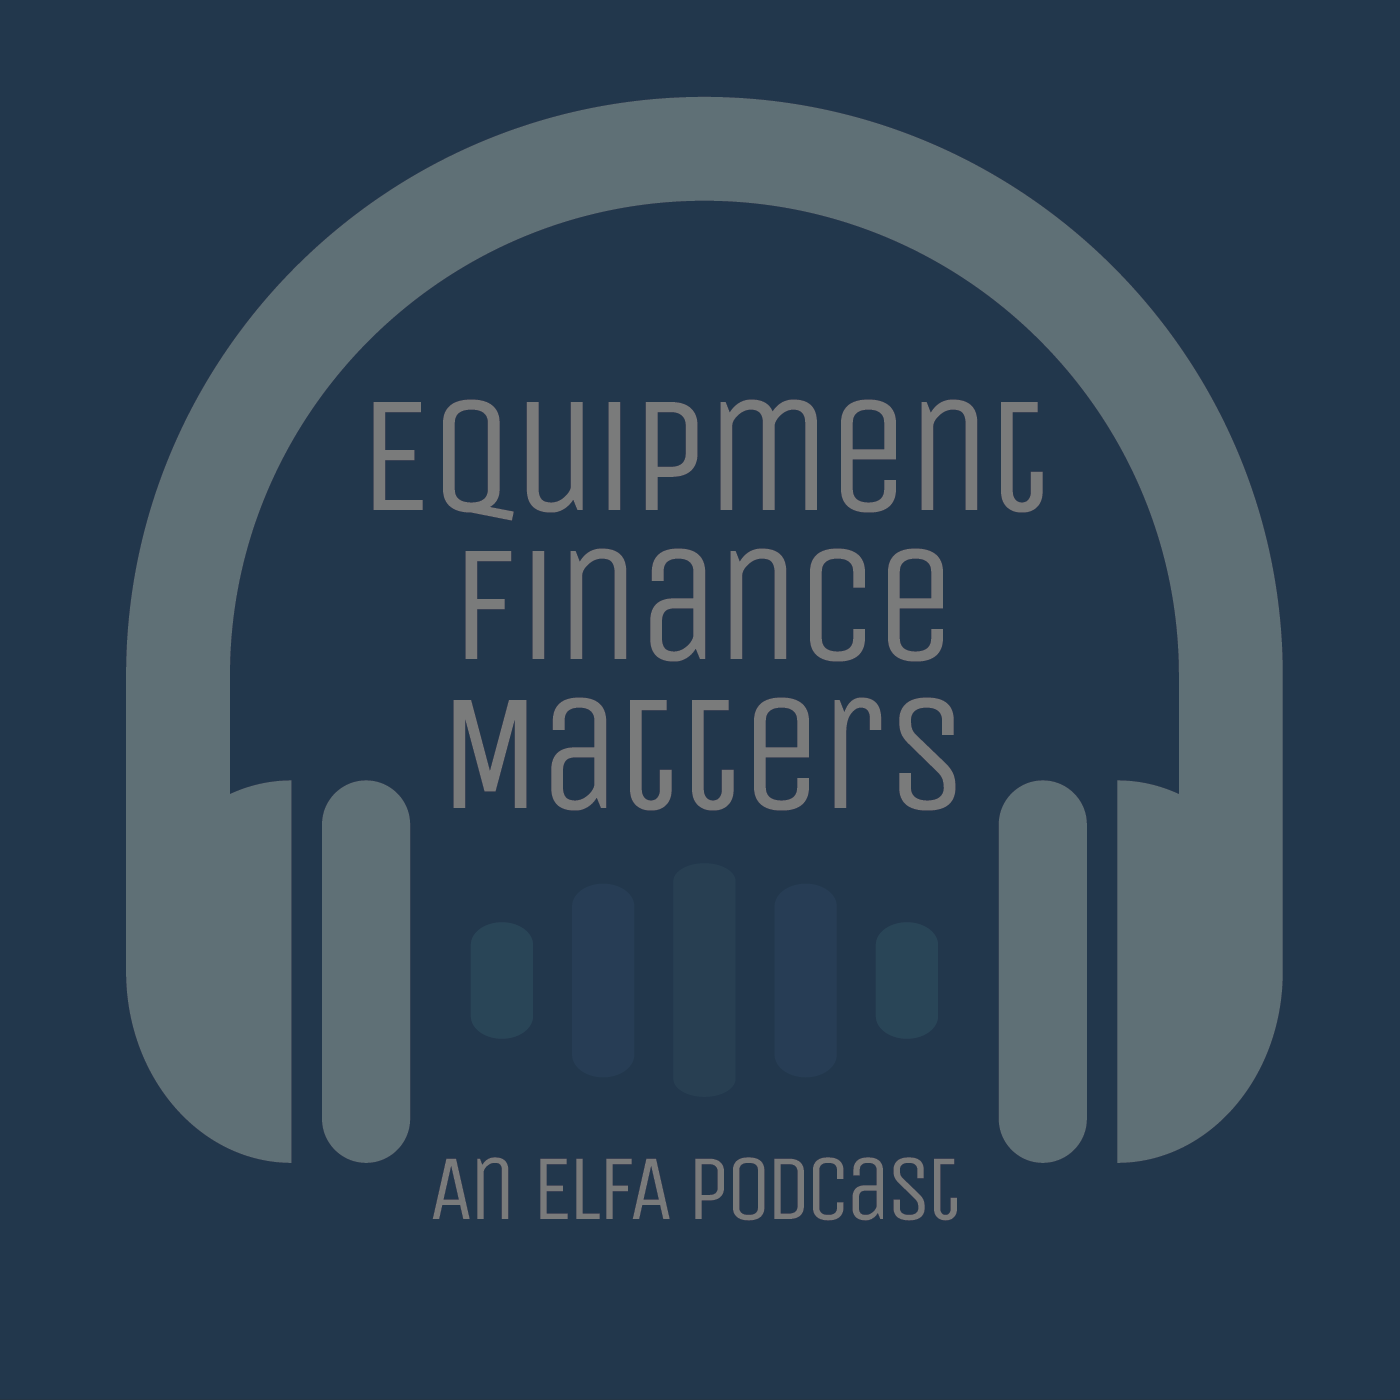 ELFA Board Chair/Finova CEO Bob Neagle featured on Equipment Finance Matters Podcast